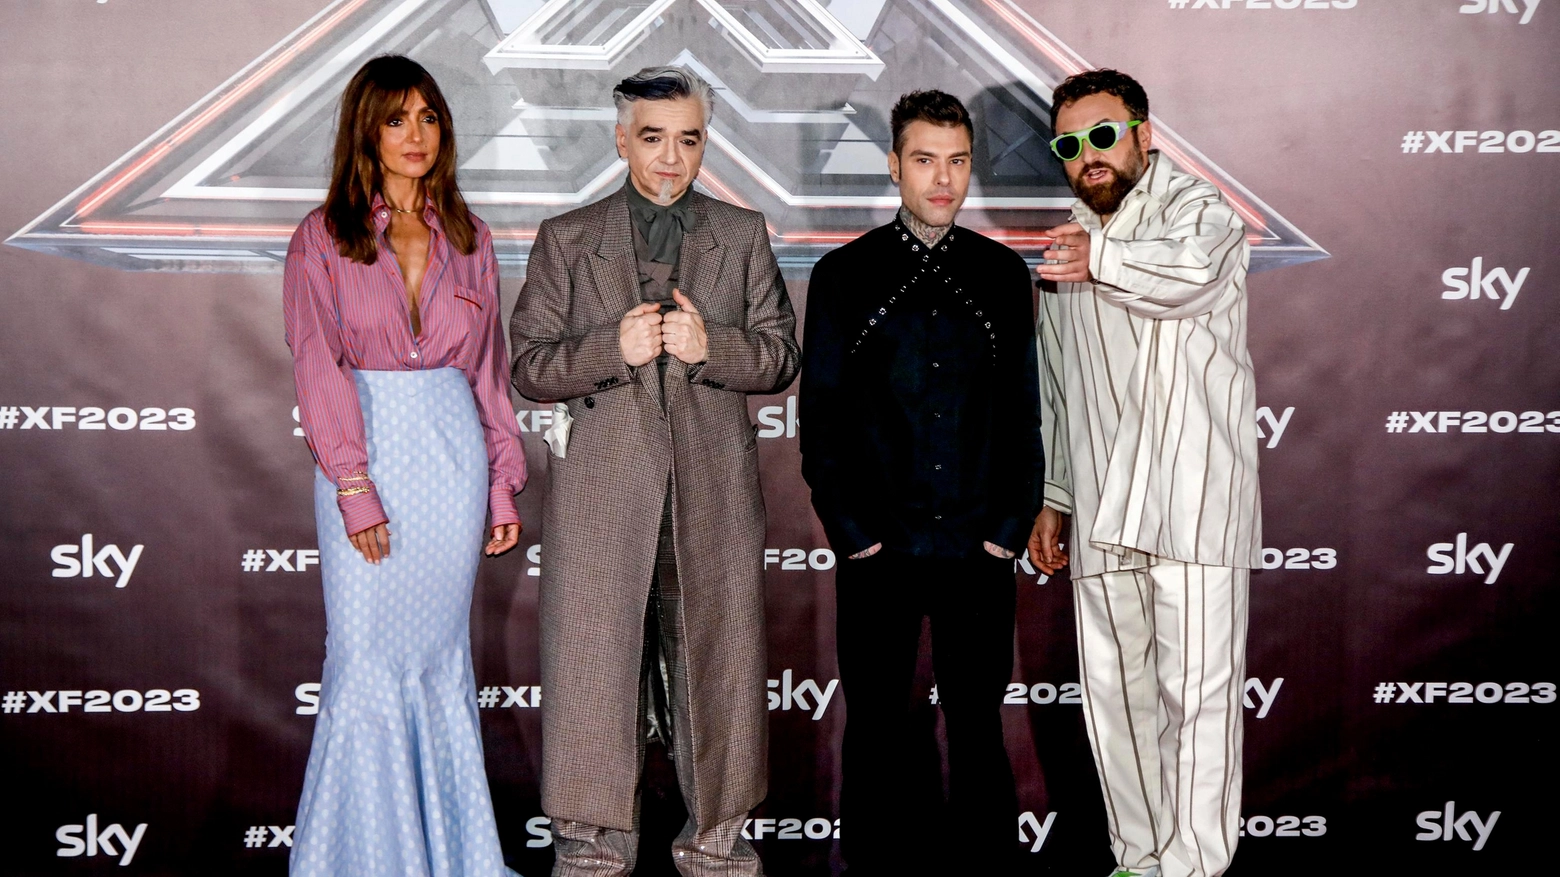 Ambra Angiolini, Morgan, Fedez e Dargen D'amico. I giudici di X Factor 2023 prima dell'allontanamento di Castoldi (Ansa)